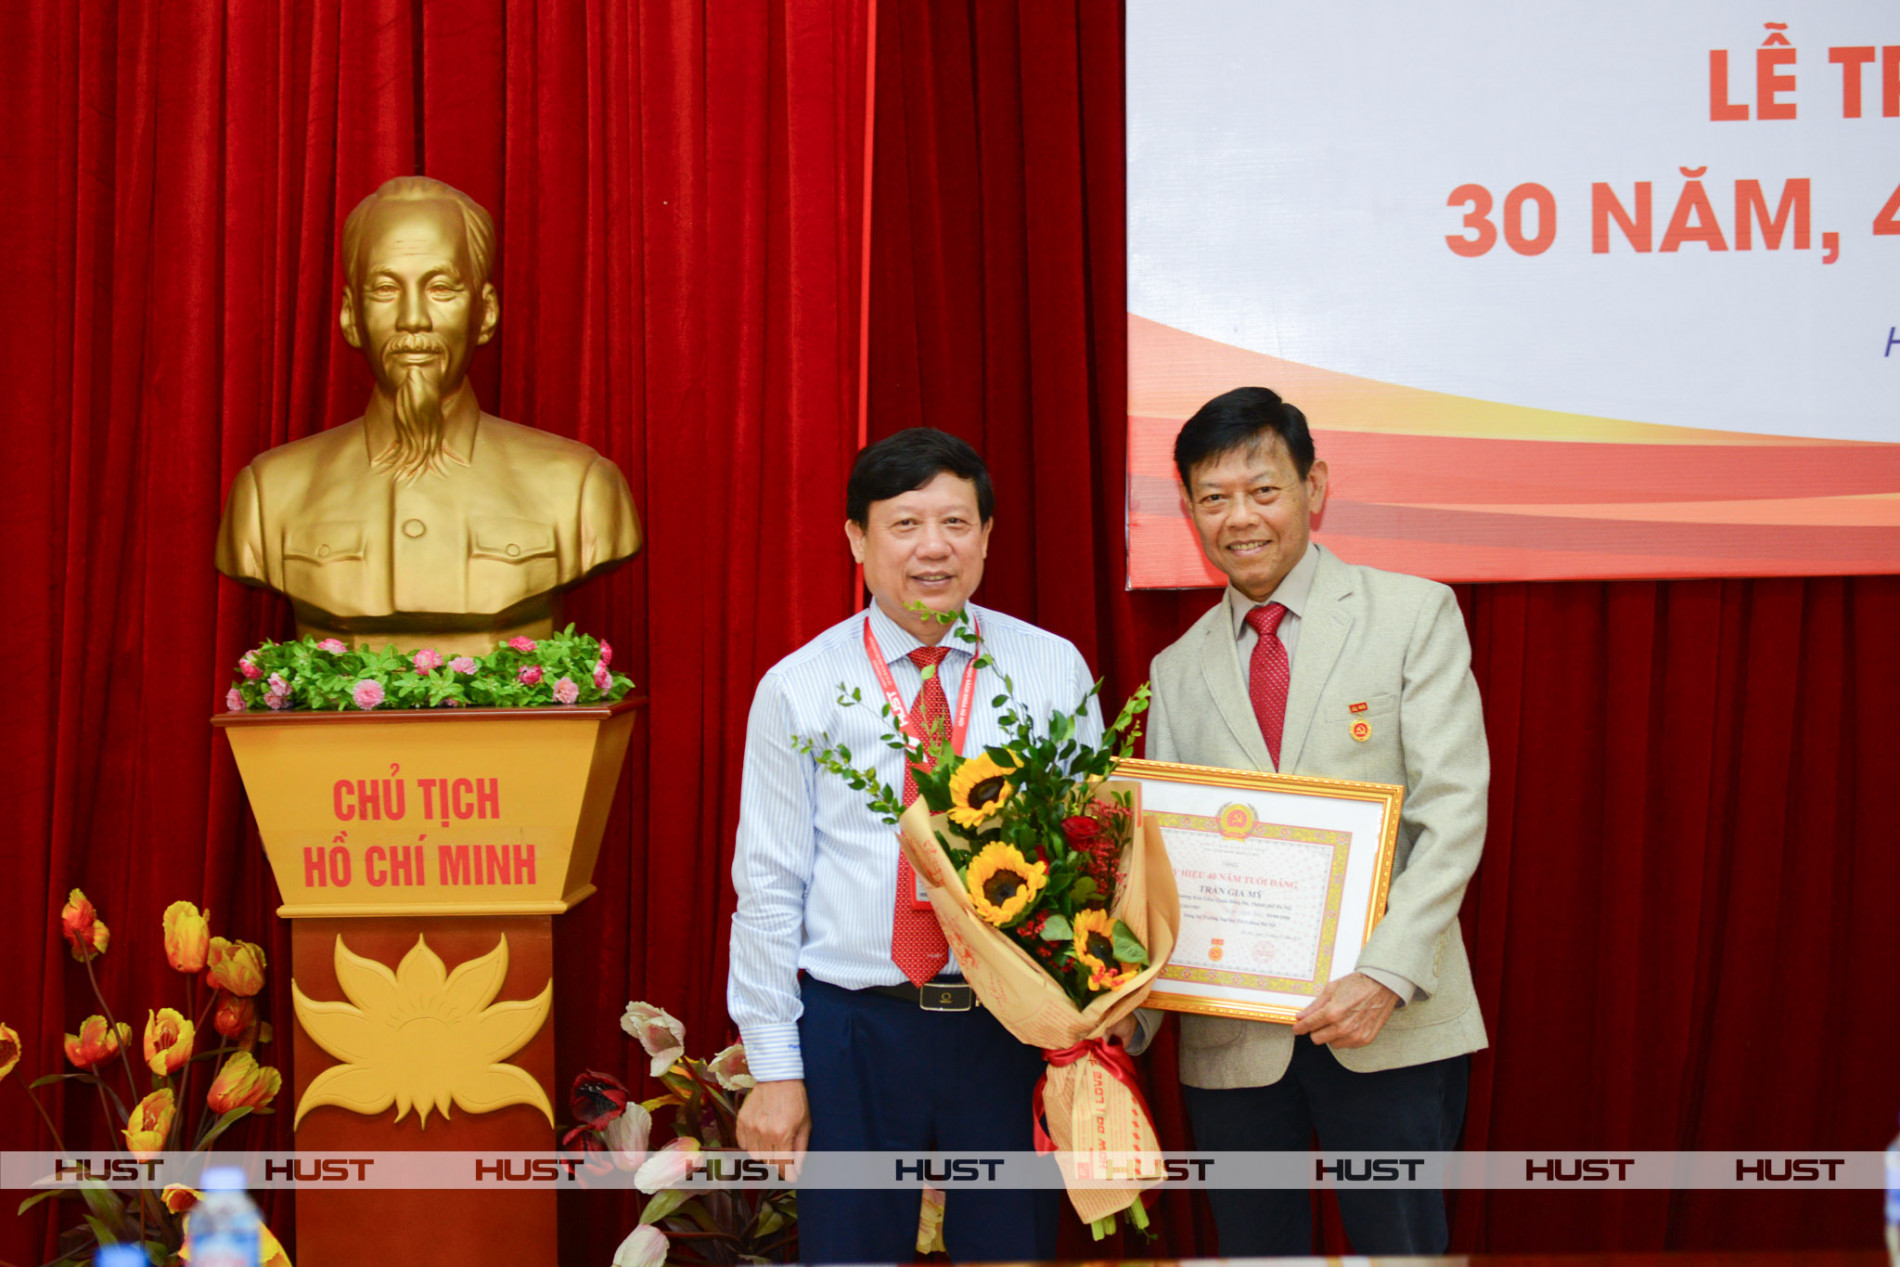 Đồng chí Bùi Đức Hùng - Phó Bí thư Thường trực điều hành Đảng bộ đại học - trân trọng trao Huy hiệu 40 năm tuổi Đảng và tặng hoa chúc mừng đồng chí Trần Gia Mỹ. Ảnh: CCDK